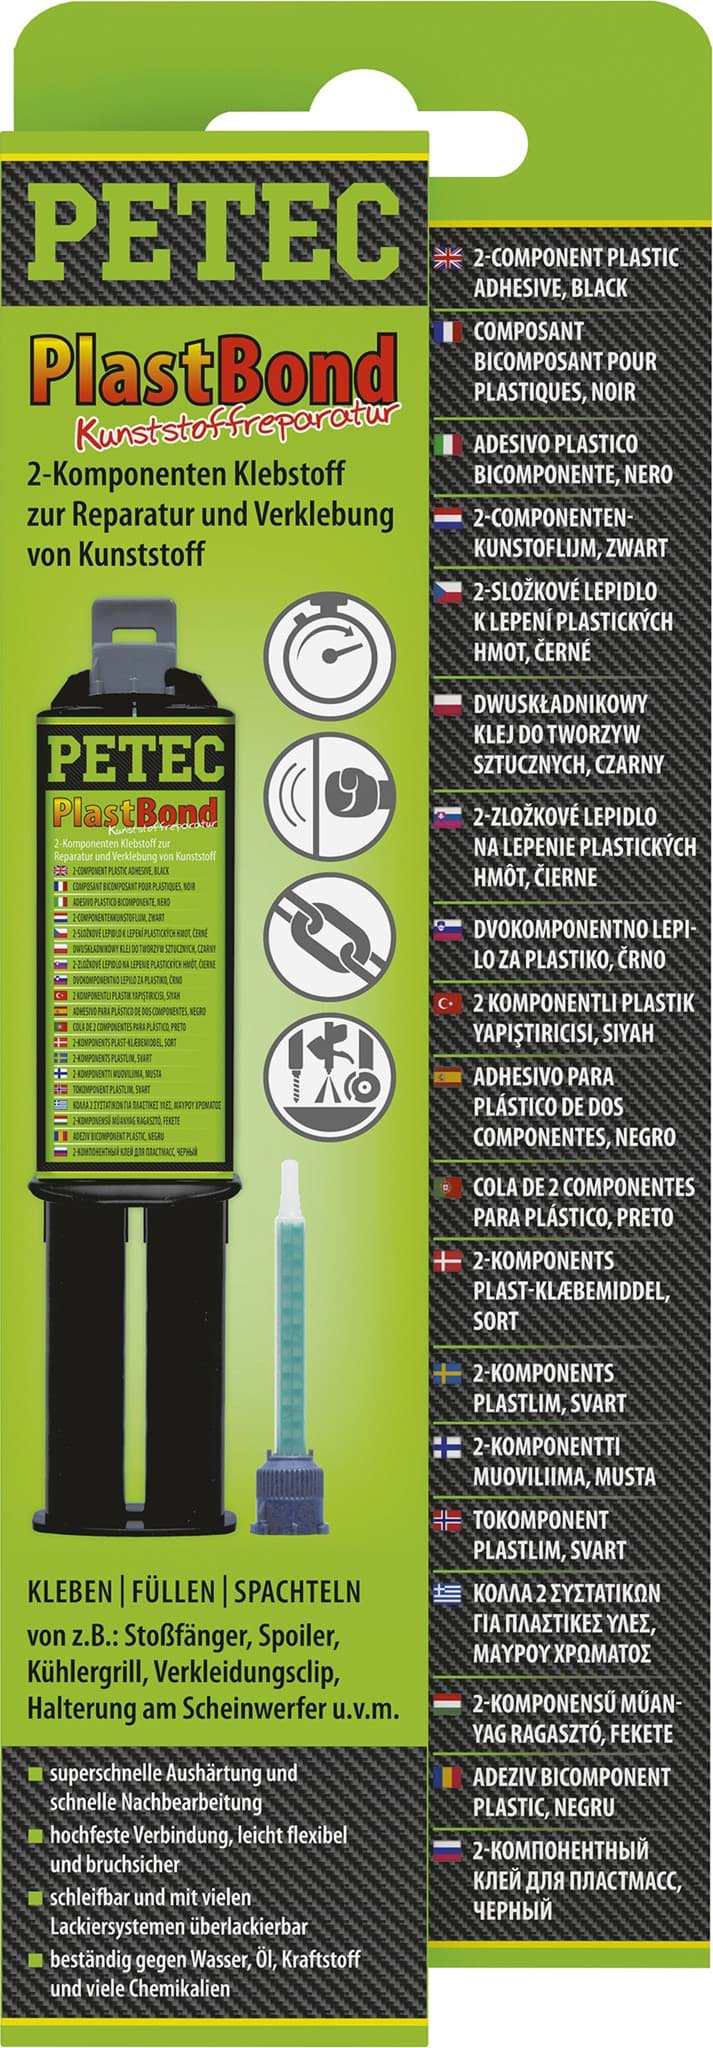 Afbeelding van Petec PlastBond 2-Komponenten Hochleistungskleber für Kunststoff 24ml